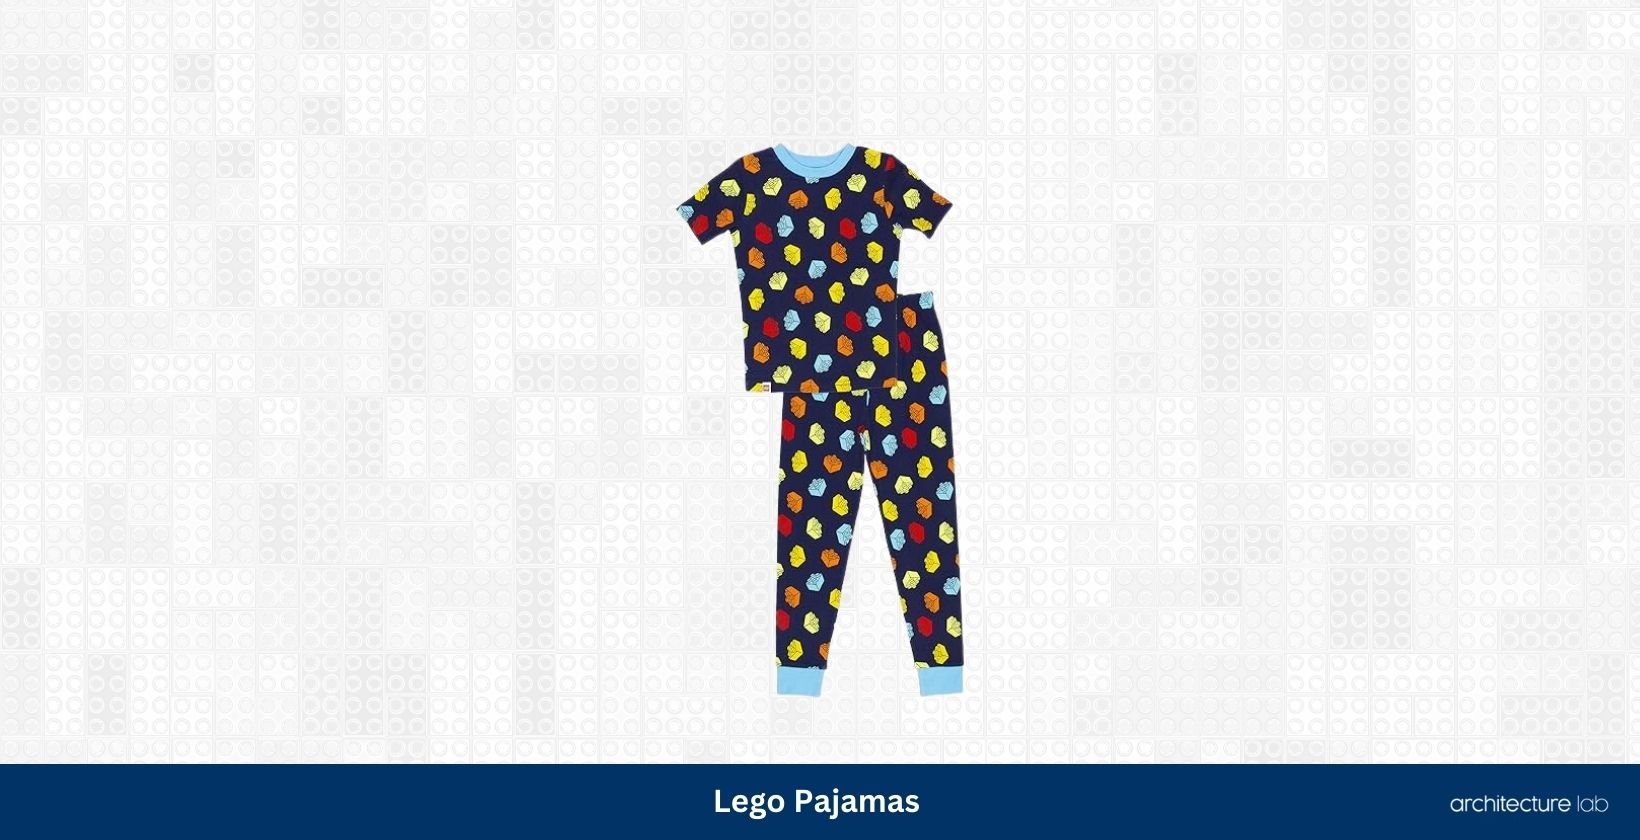 Lego pajamas